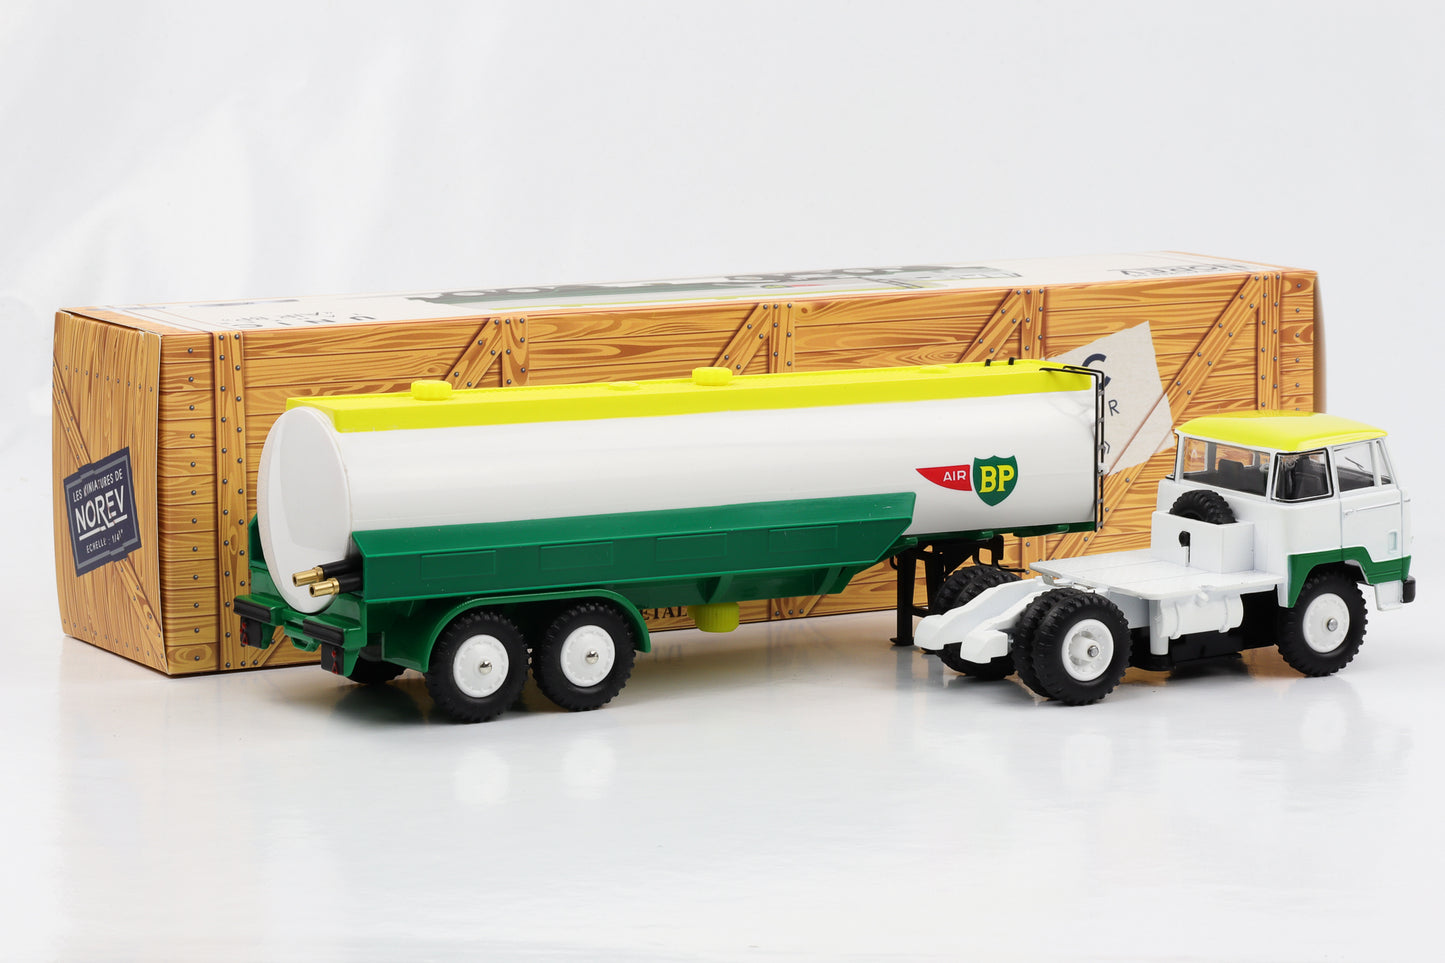 1:43 Unic Esterel camion cisterna Air BP bianco-giallo-verde Norev pressofuso